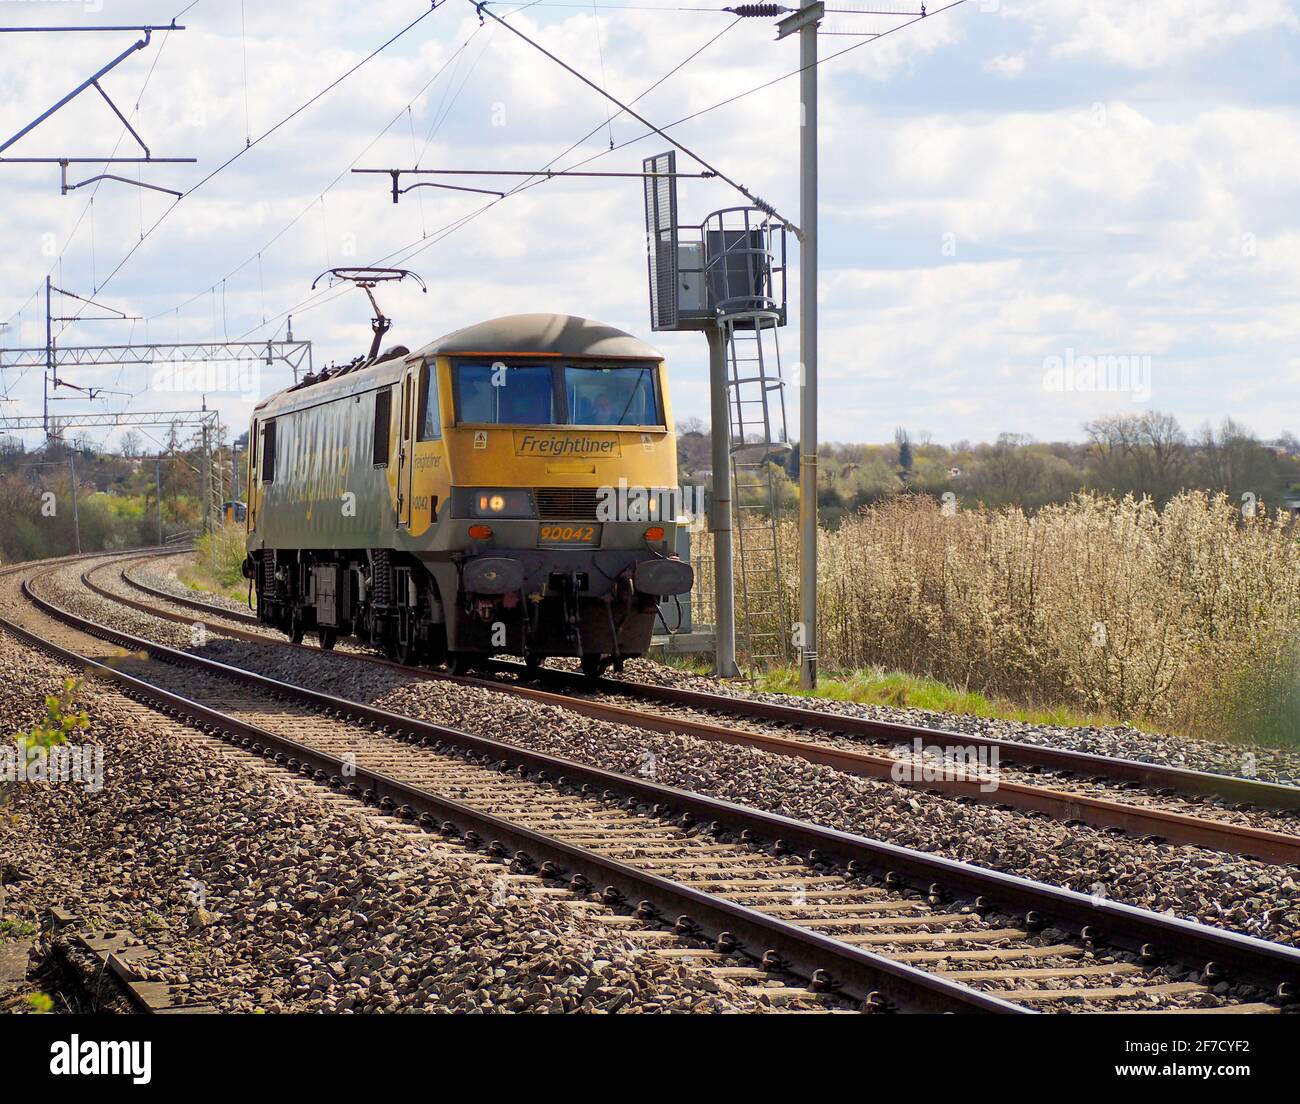 La locomotora eléctrica Freightliner clase 90 90042 pasa por Northampton en su camino a Crewe, viajando locomotora ligera Foto de stock